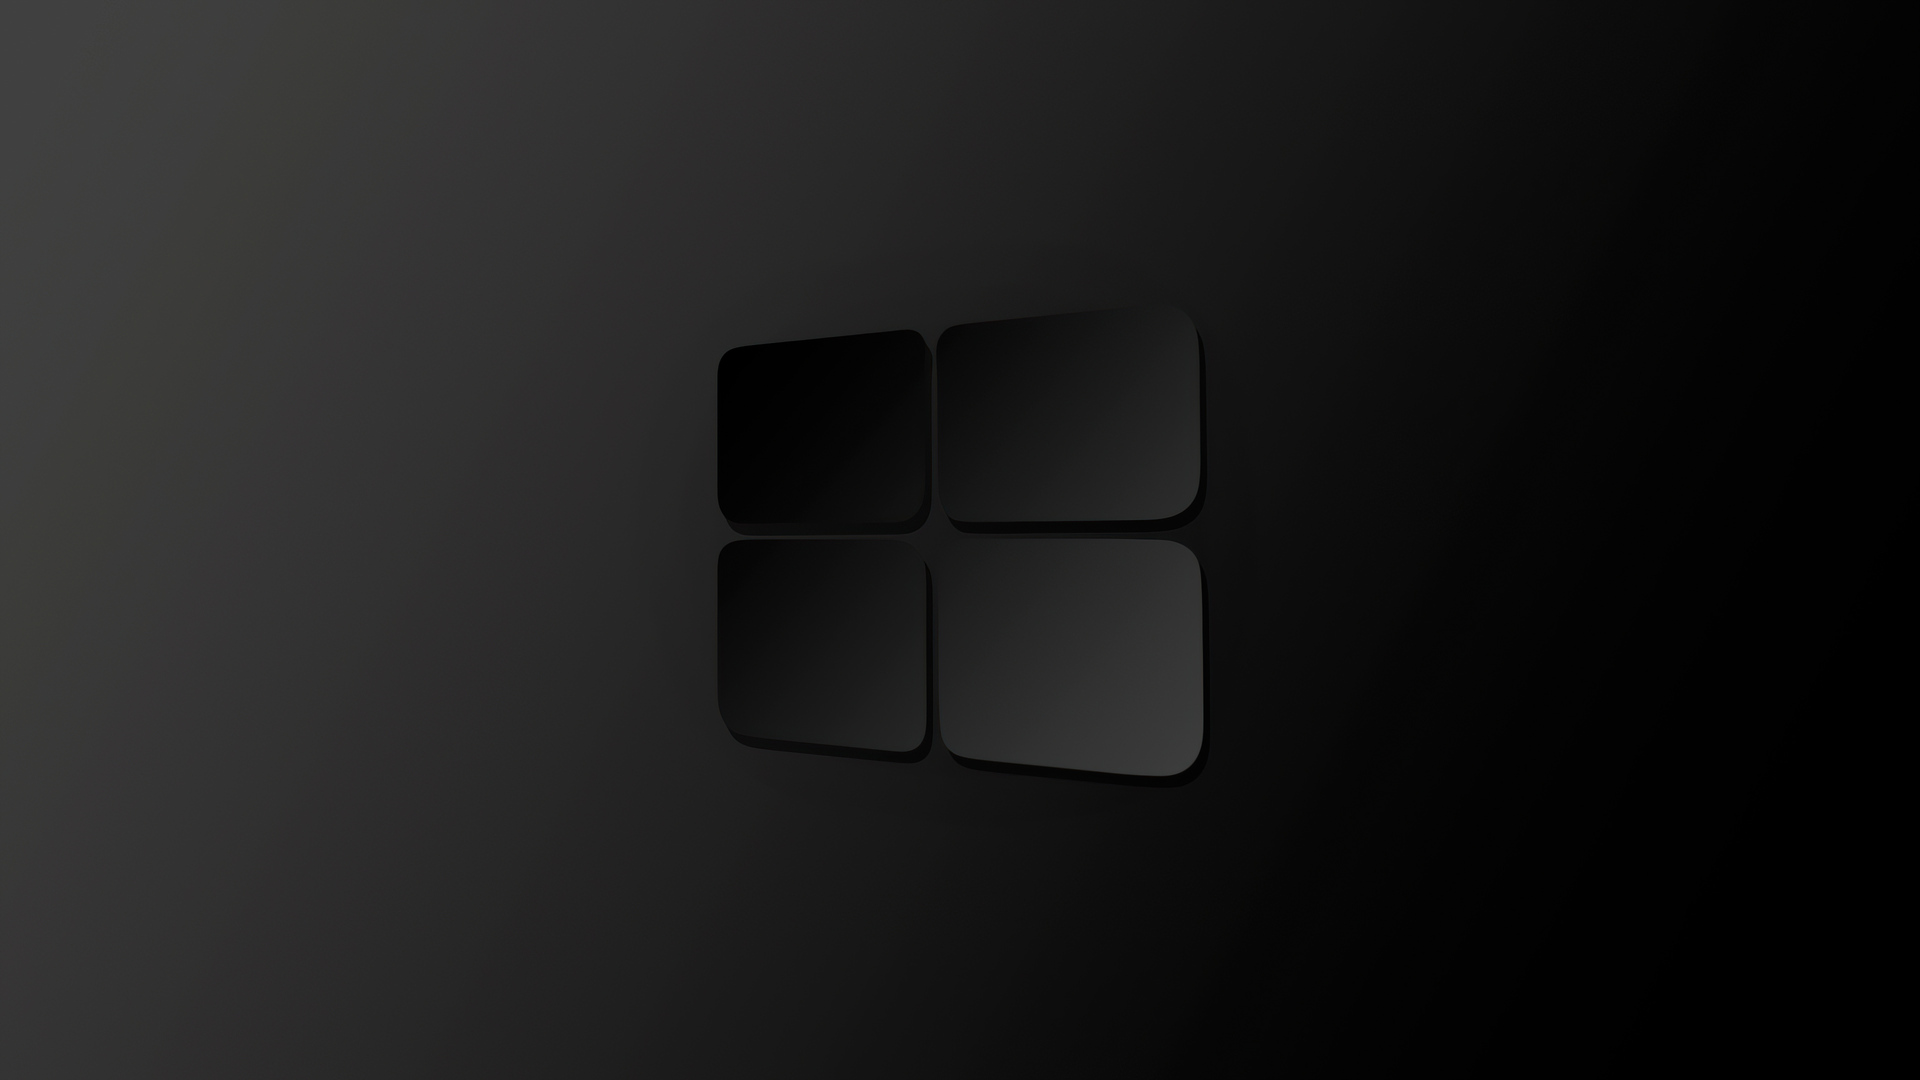 Hình nền Windows 10 logo đen tối: Hình nền Windows 10 logo đen tối sẽ mang đến cho bạn một màn hình độc đáo và cá tính. Độ chất lượng tối giản và thiết kế đầy tinh tế sẽ tạo nên một bầu không khí làm việc mới mẻ và đáng yêu.